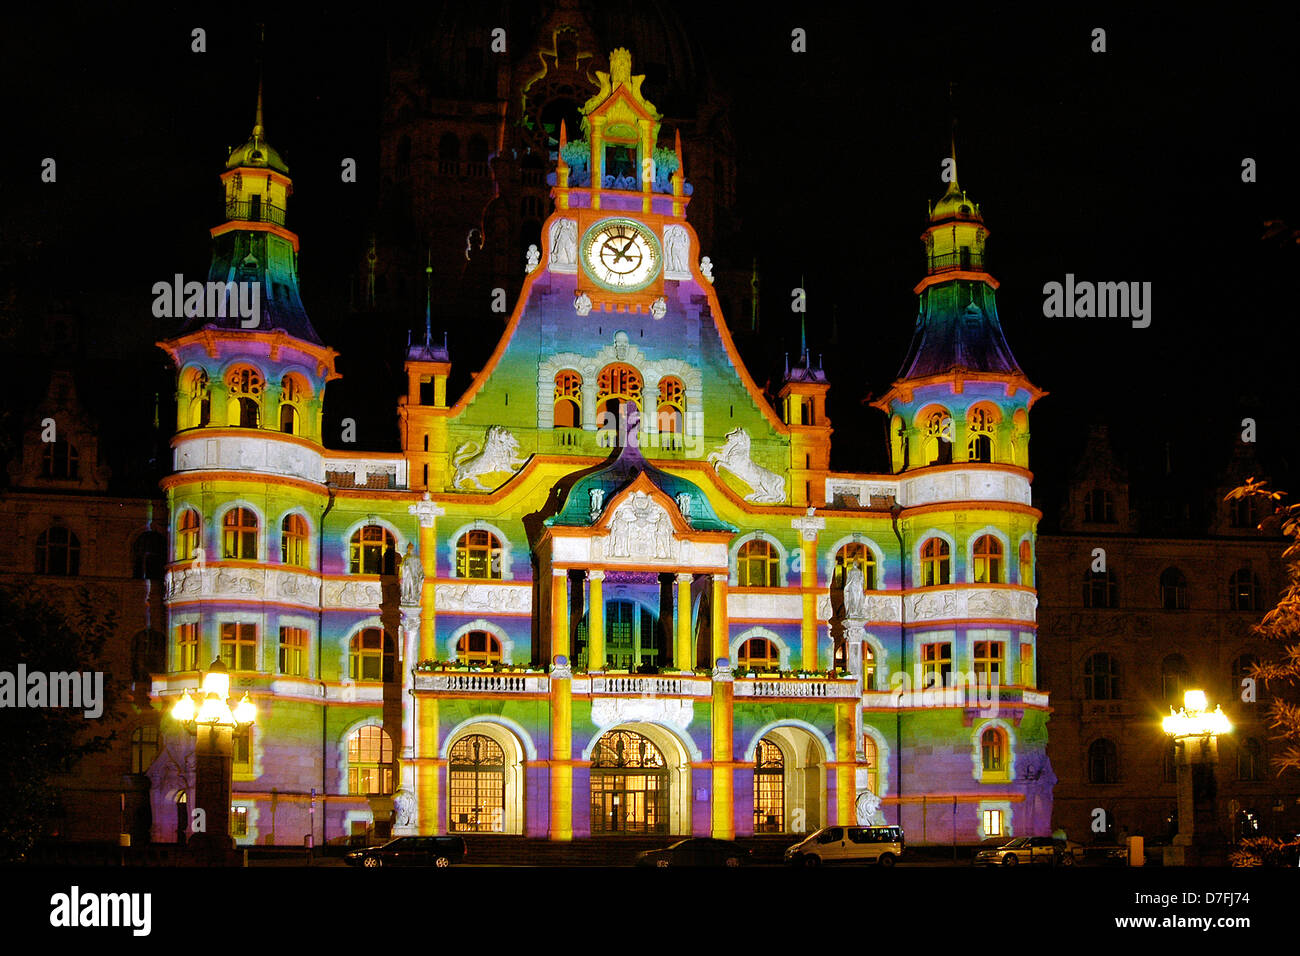 Alemania, Hannover, el nuevo ayuntamiento, el nuevo ayuntamiento con iluminación especial Foto de stock